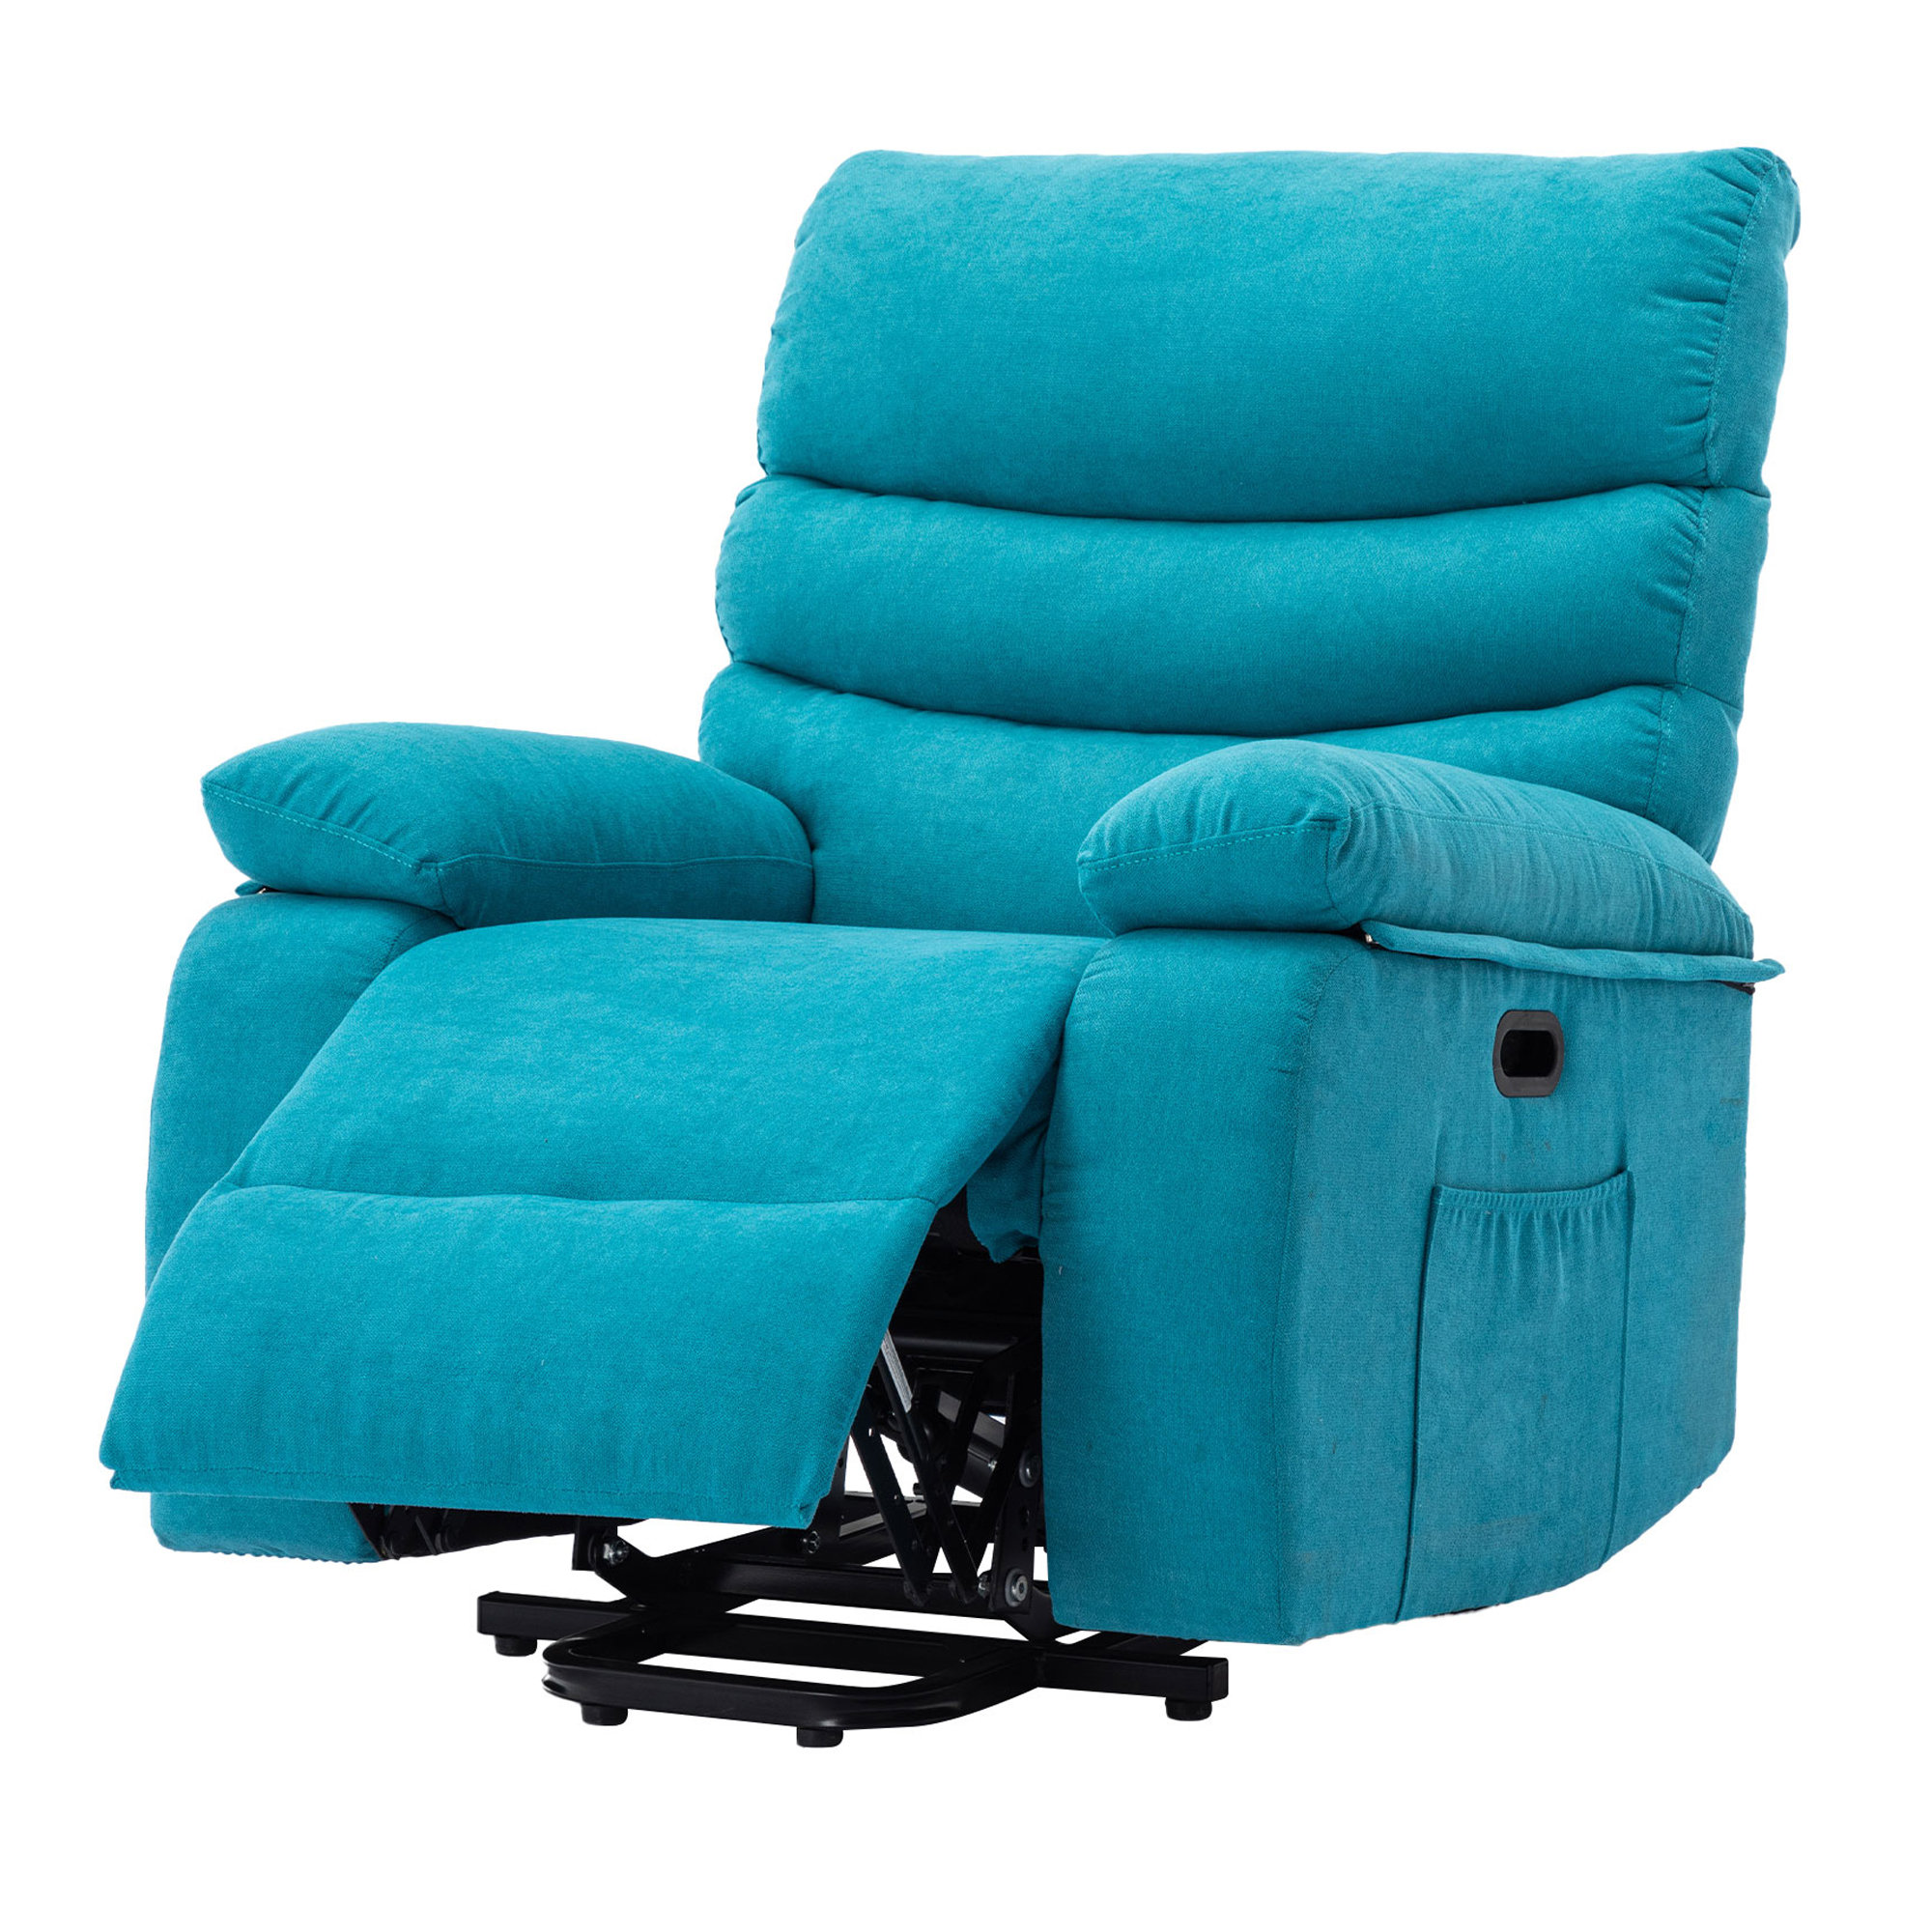 https://assets.wfcdn.com/im/53638195/compr-r85/2357/235724464/power-reclining-heated-massage-chair.jpg